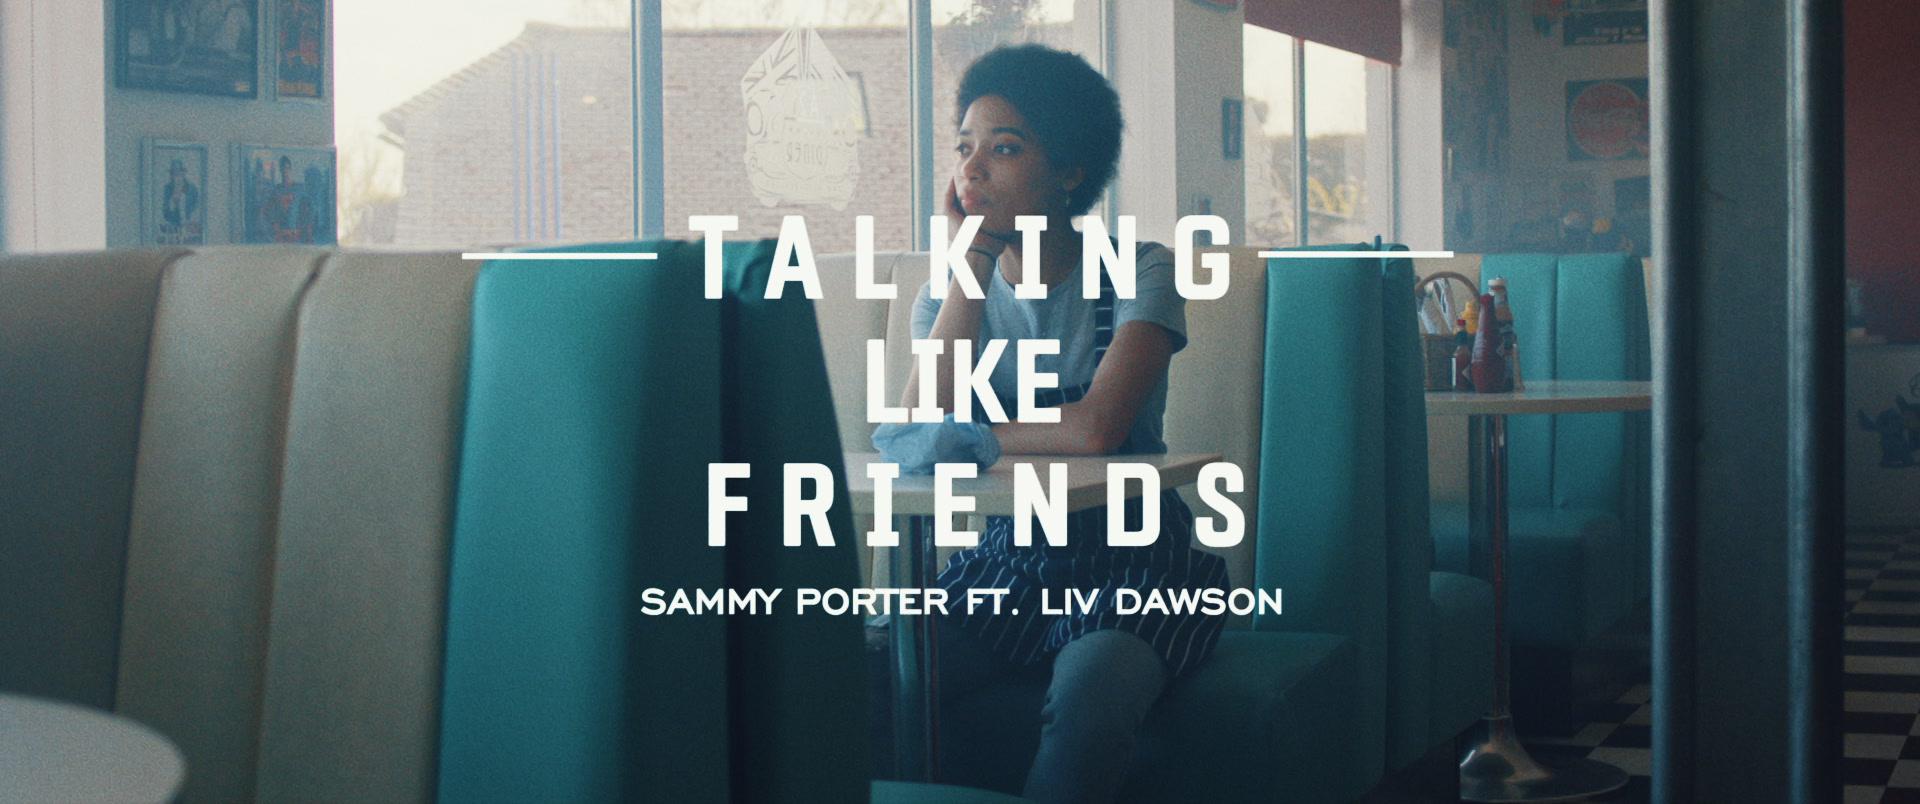 Sammy Porter - Talking Like Friends